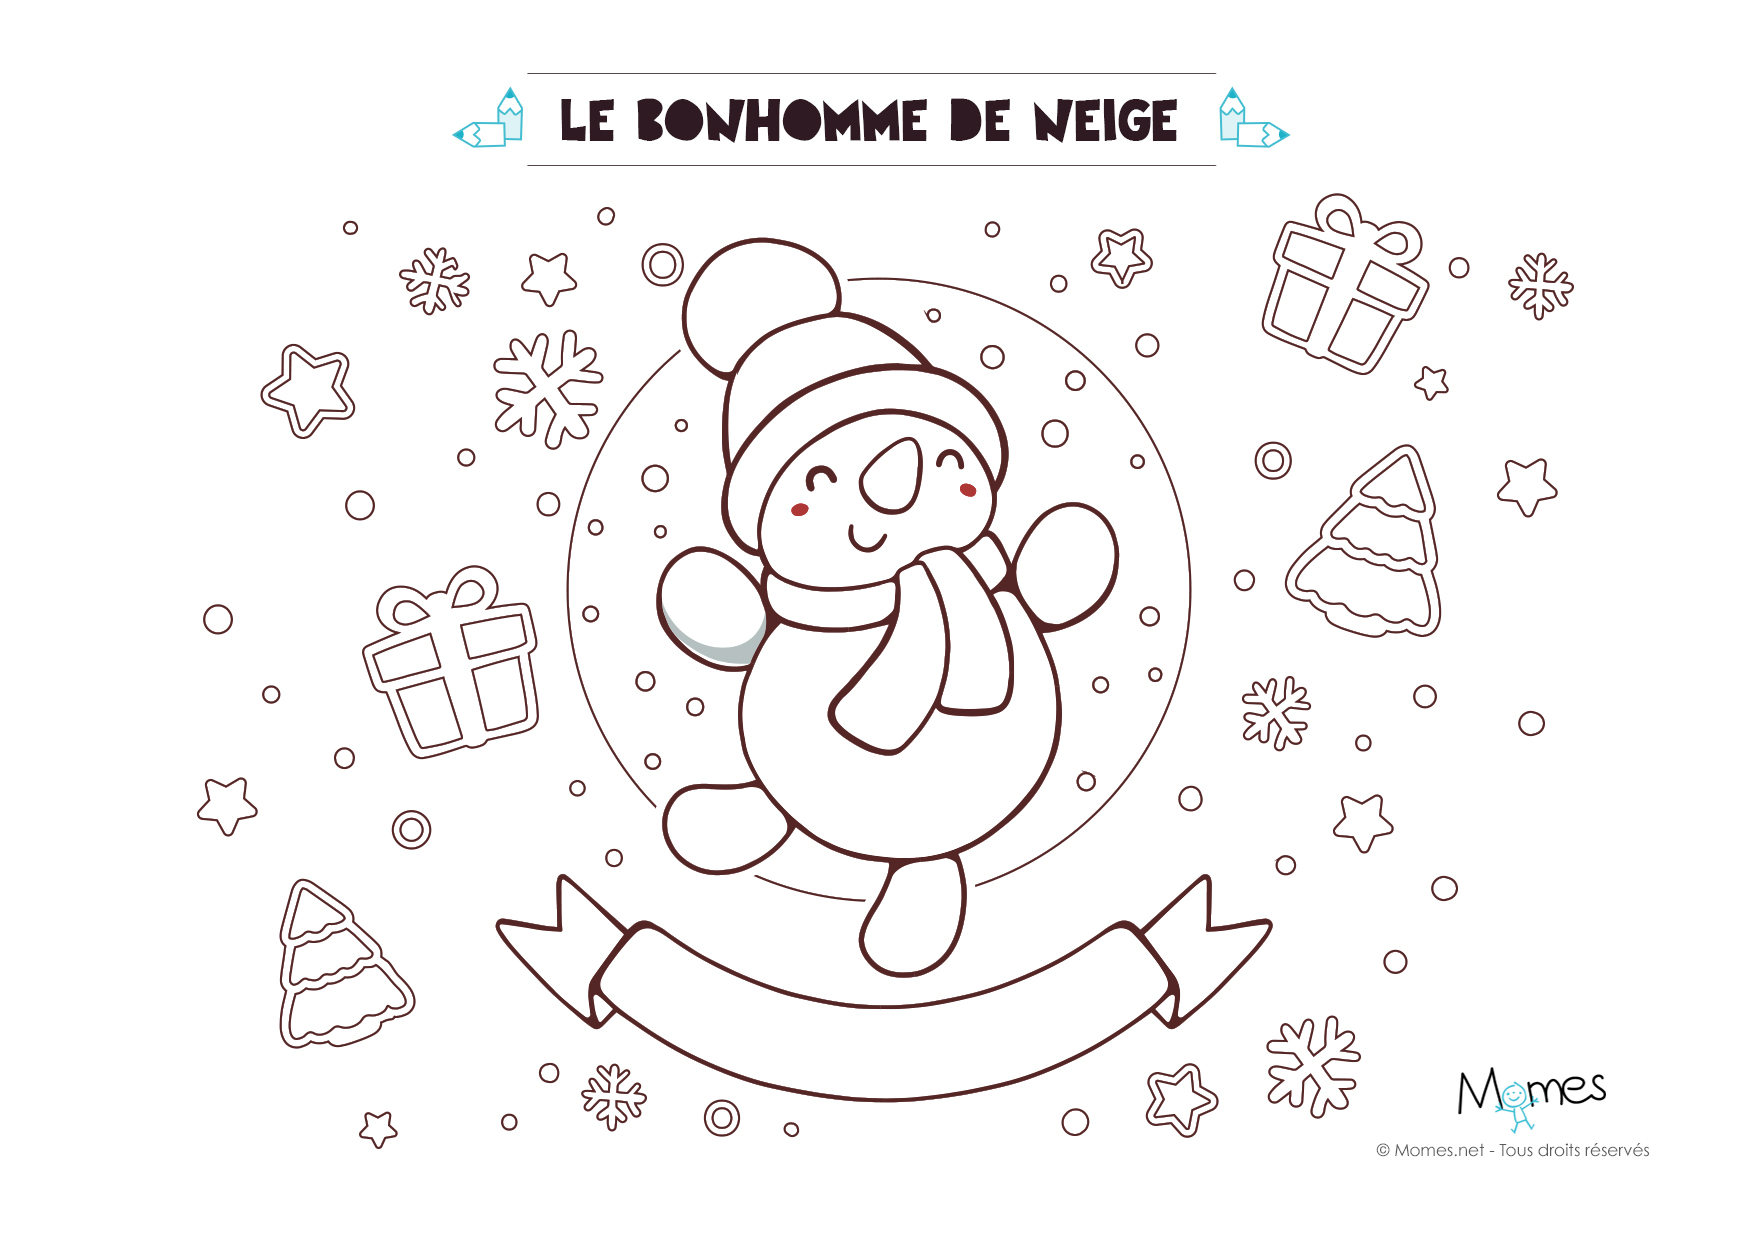 Coloriage de Noël : le bonhomme de neige - Momes.net